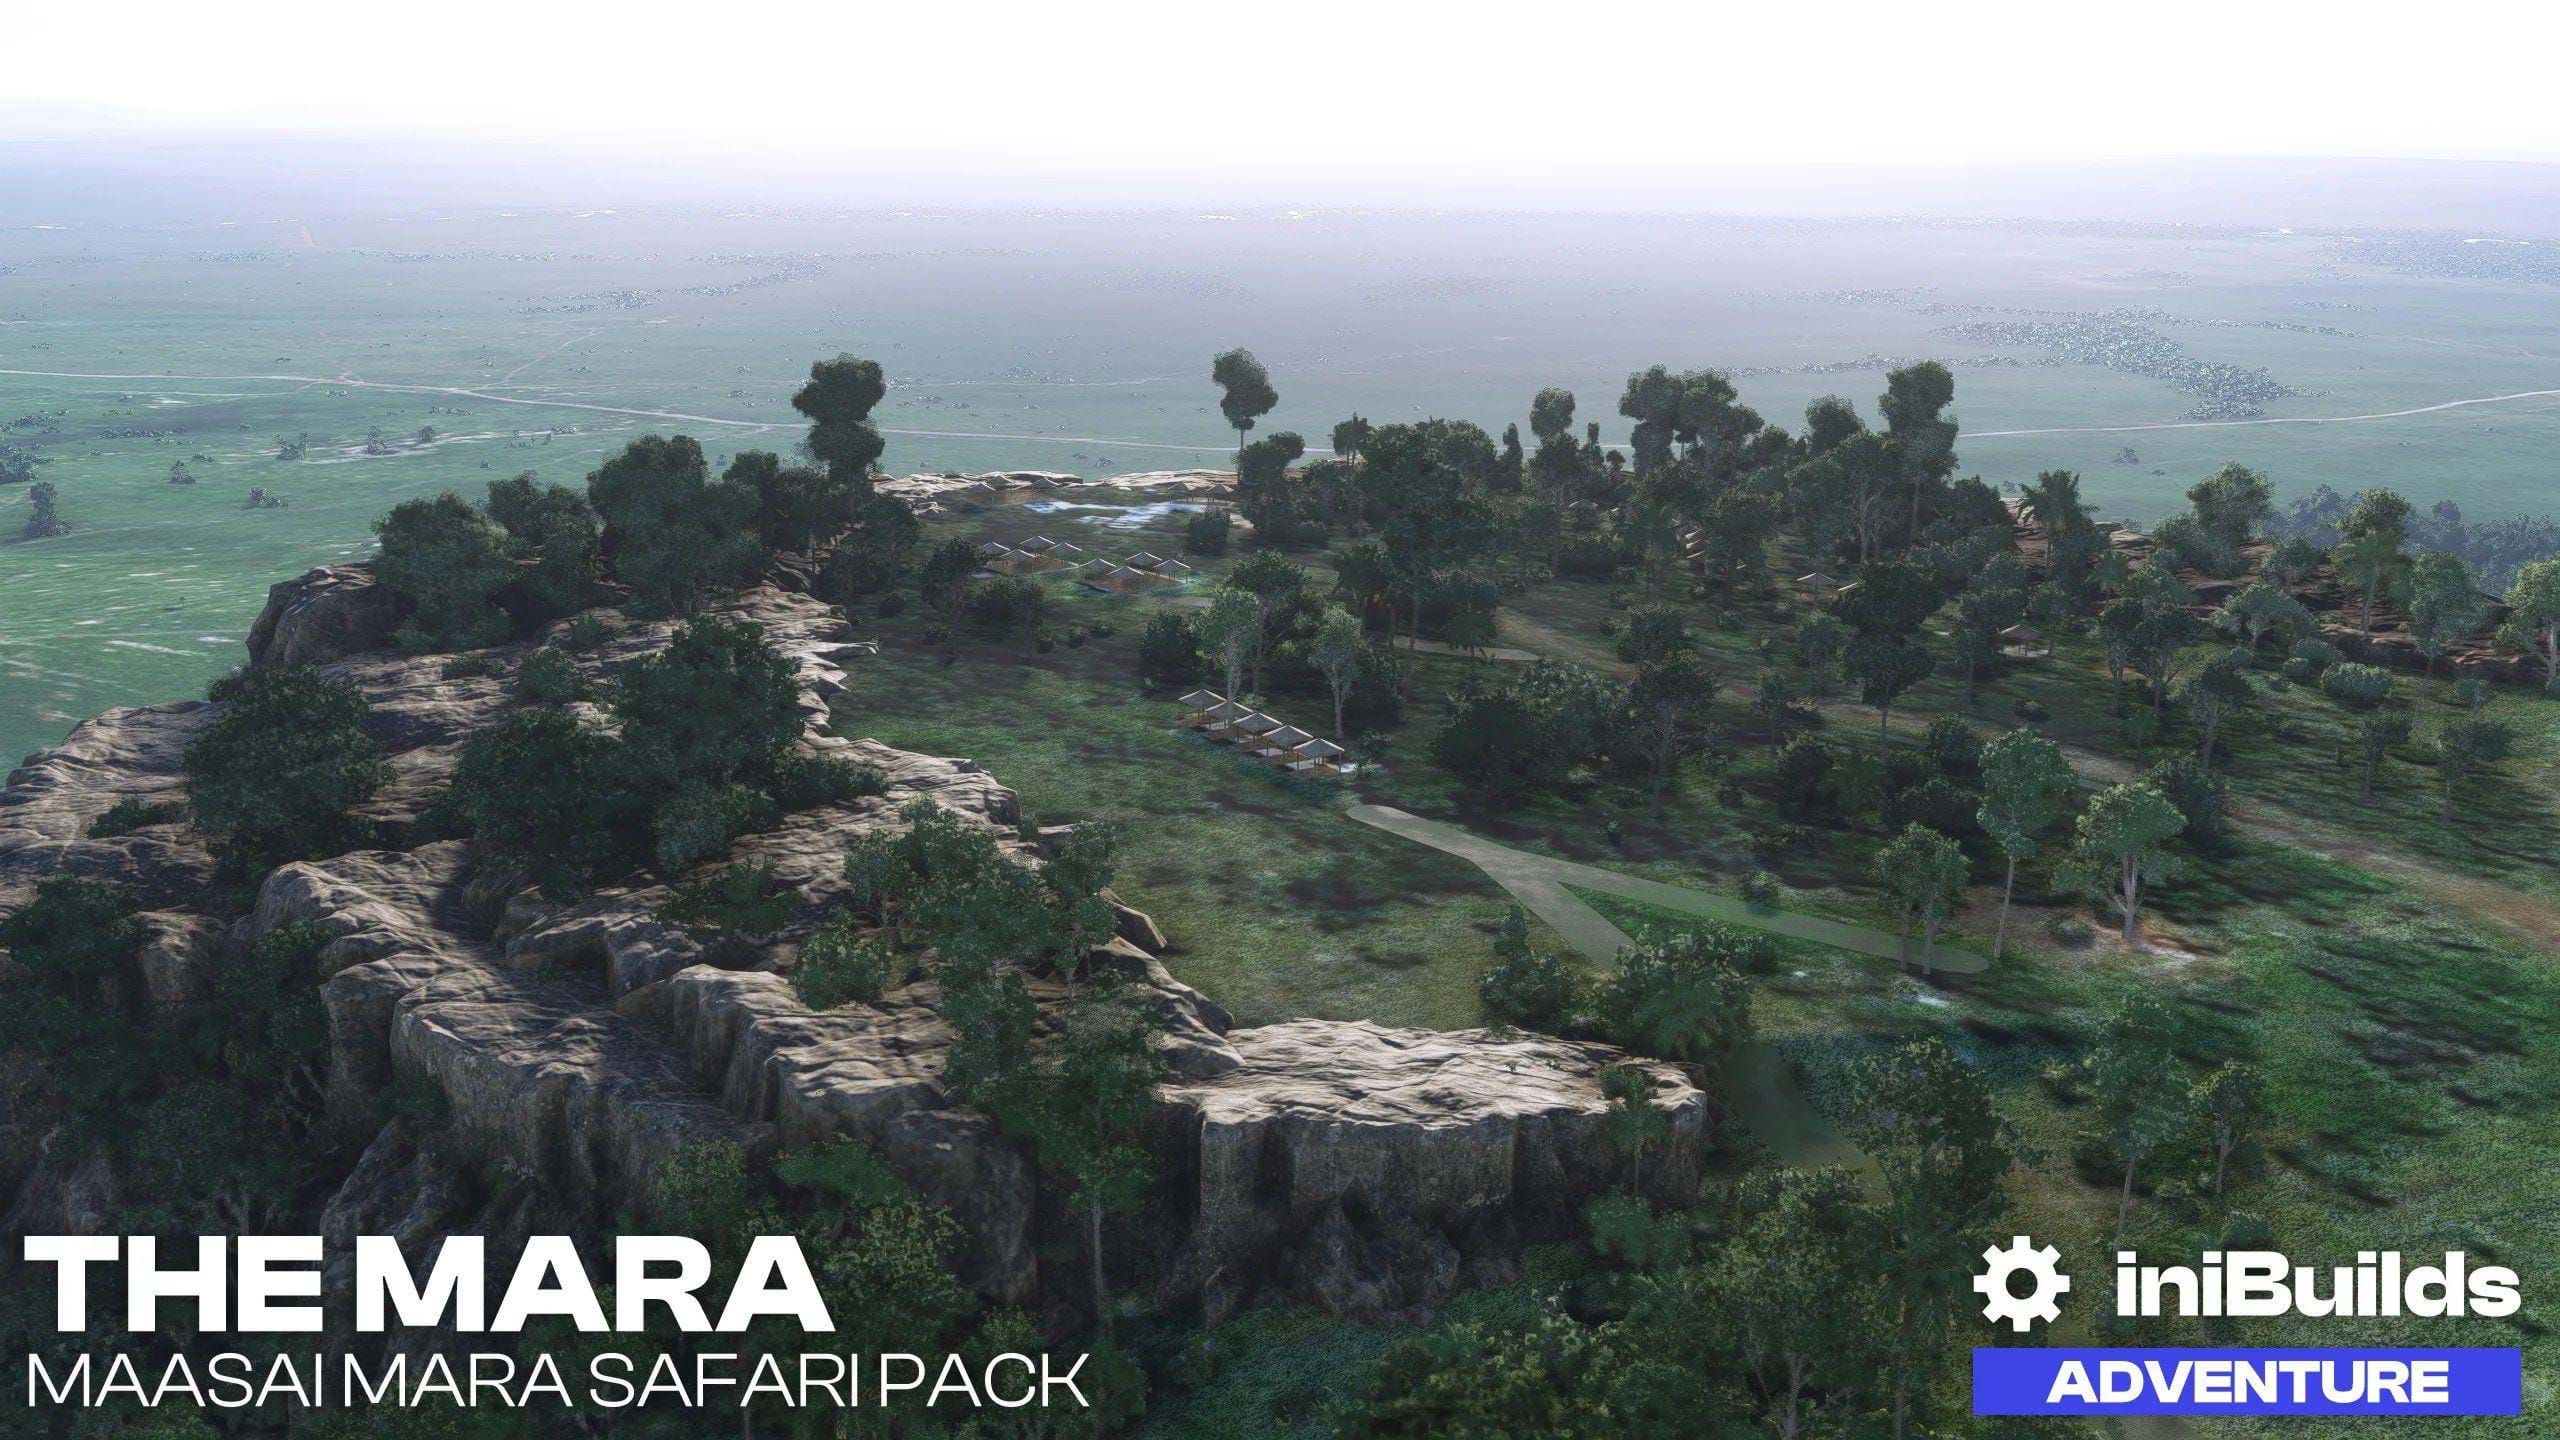 iniBuilds released free Maasai Mara Safari Pack scenery for MSFS